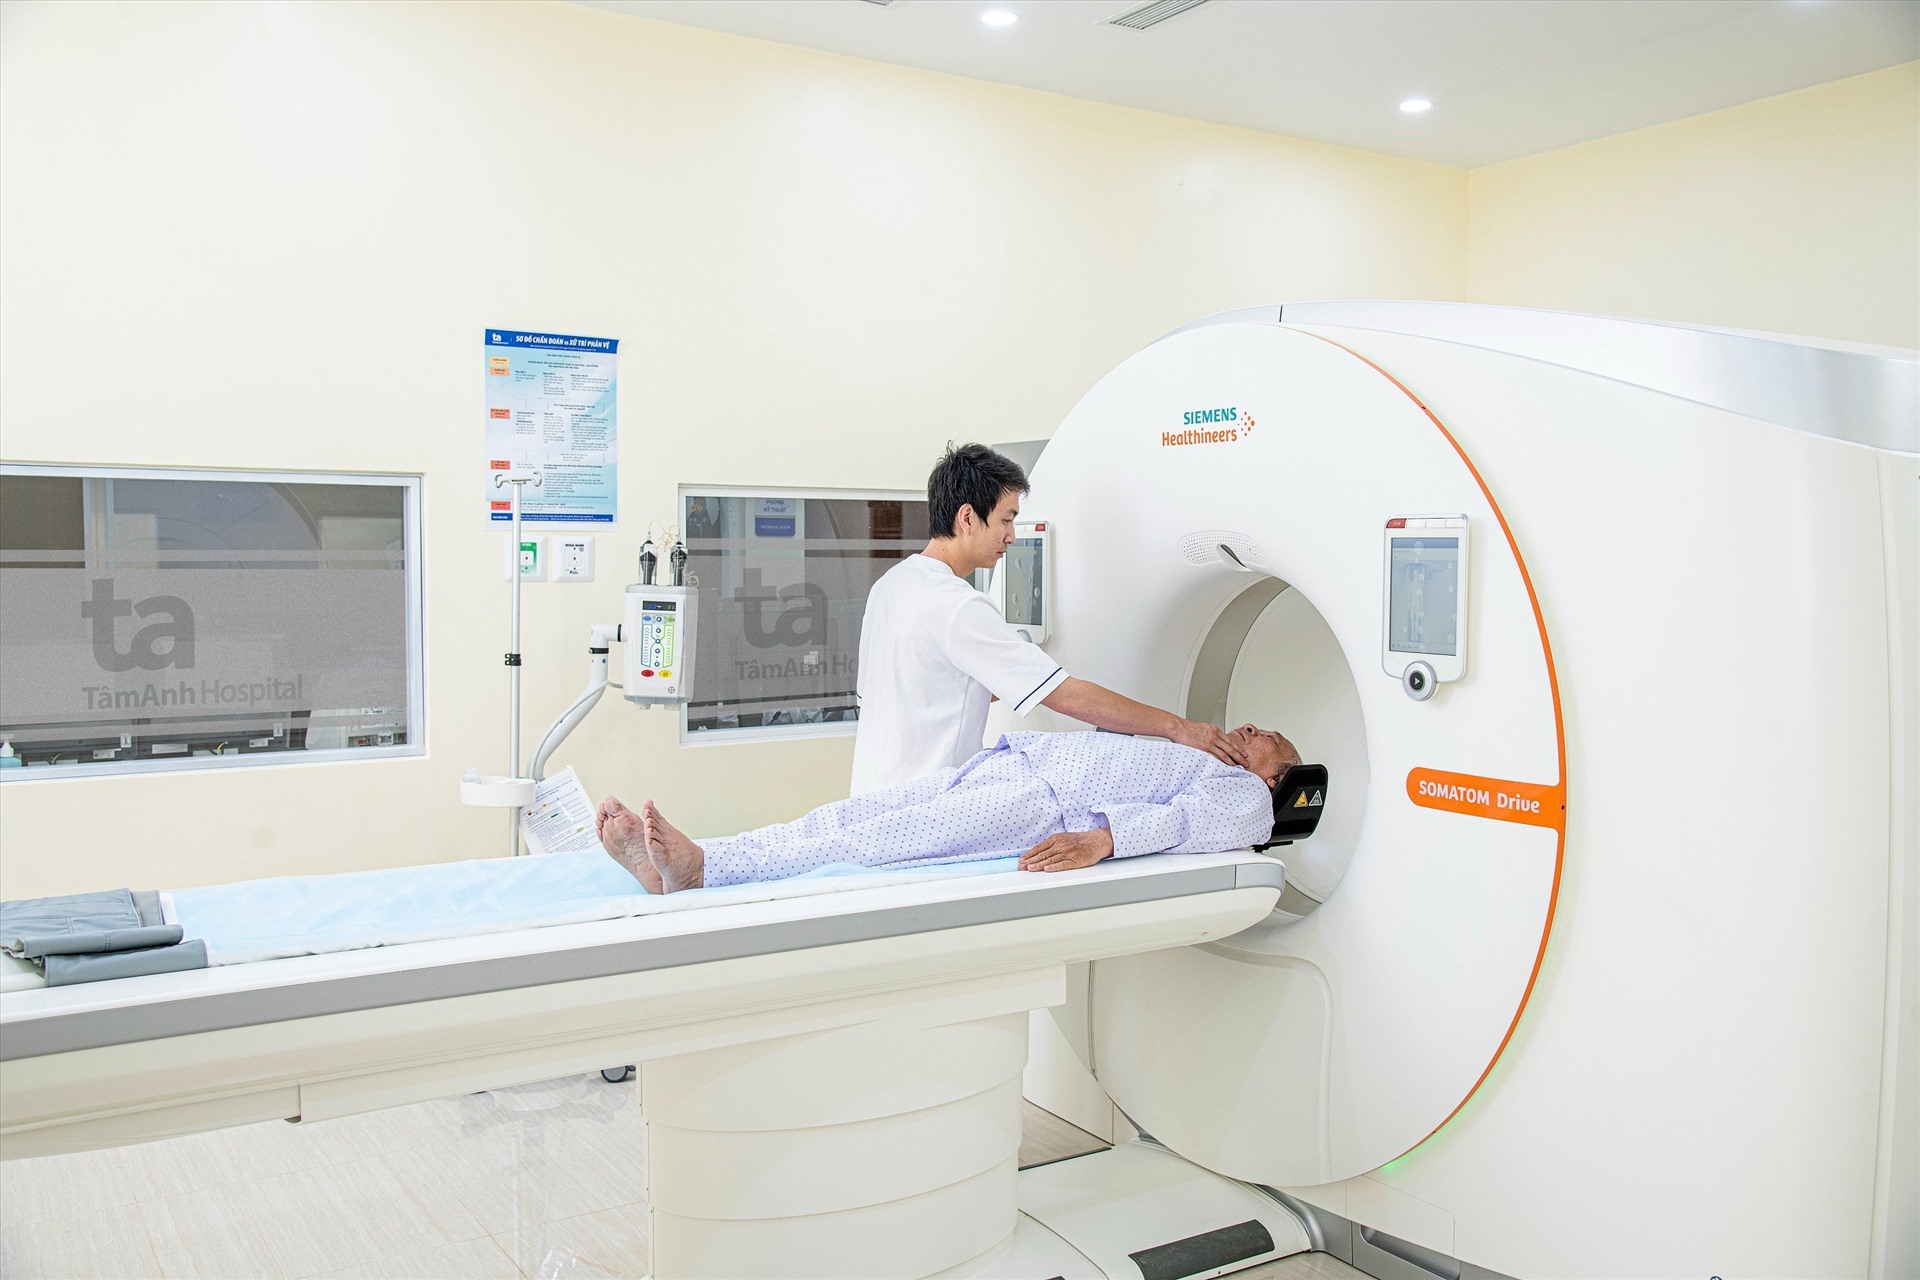 Hệ thống chụp CT 768 lát cắt ứng dụng trí tuệ nhân tạo (AI) tầm soát và chẩn đoán bệnh. Ảnh: Bệnh viện Tâm Anh.